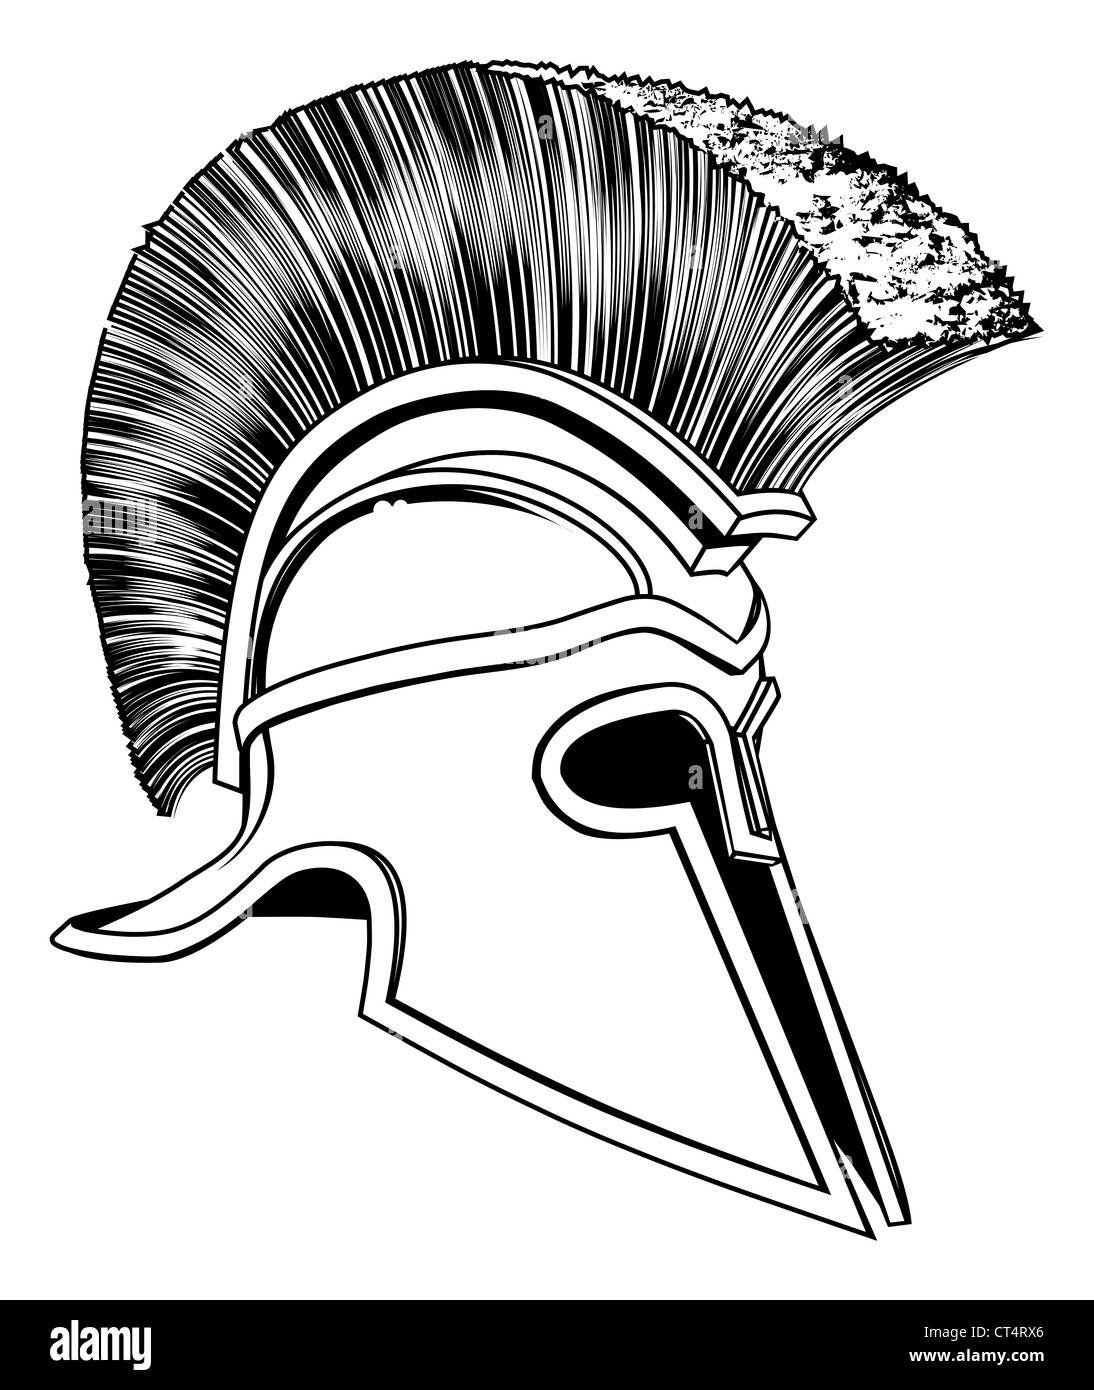 Casco romano Imágenes de stock en blanco y negro - Alamy